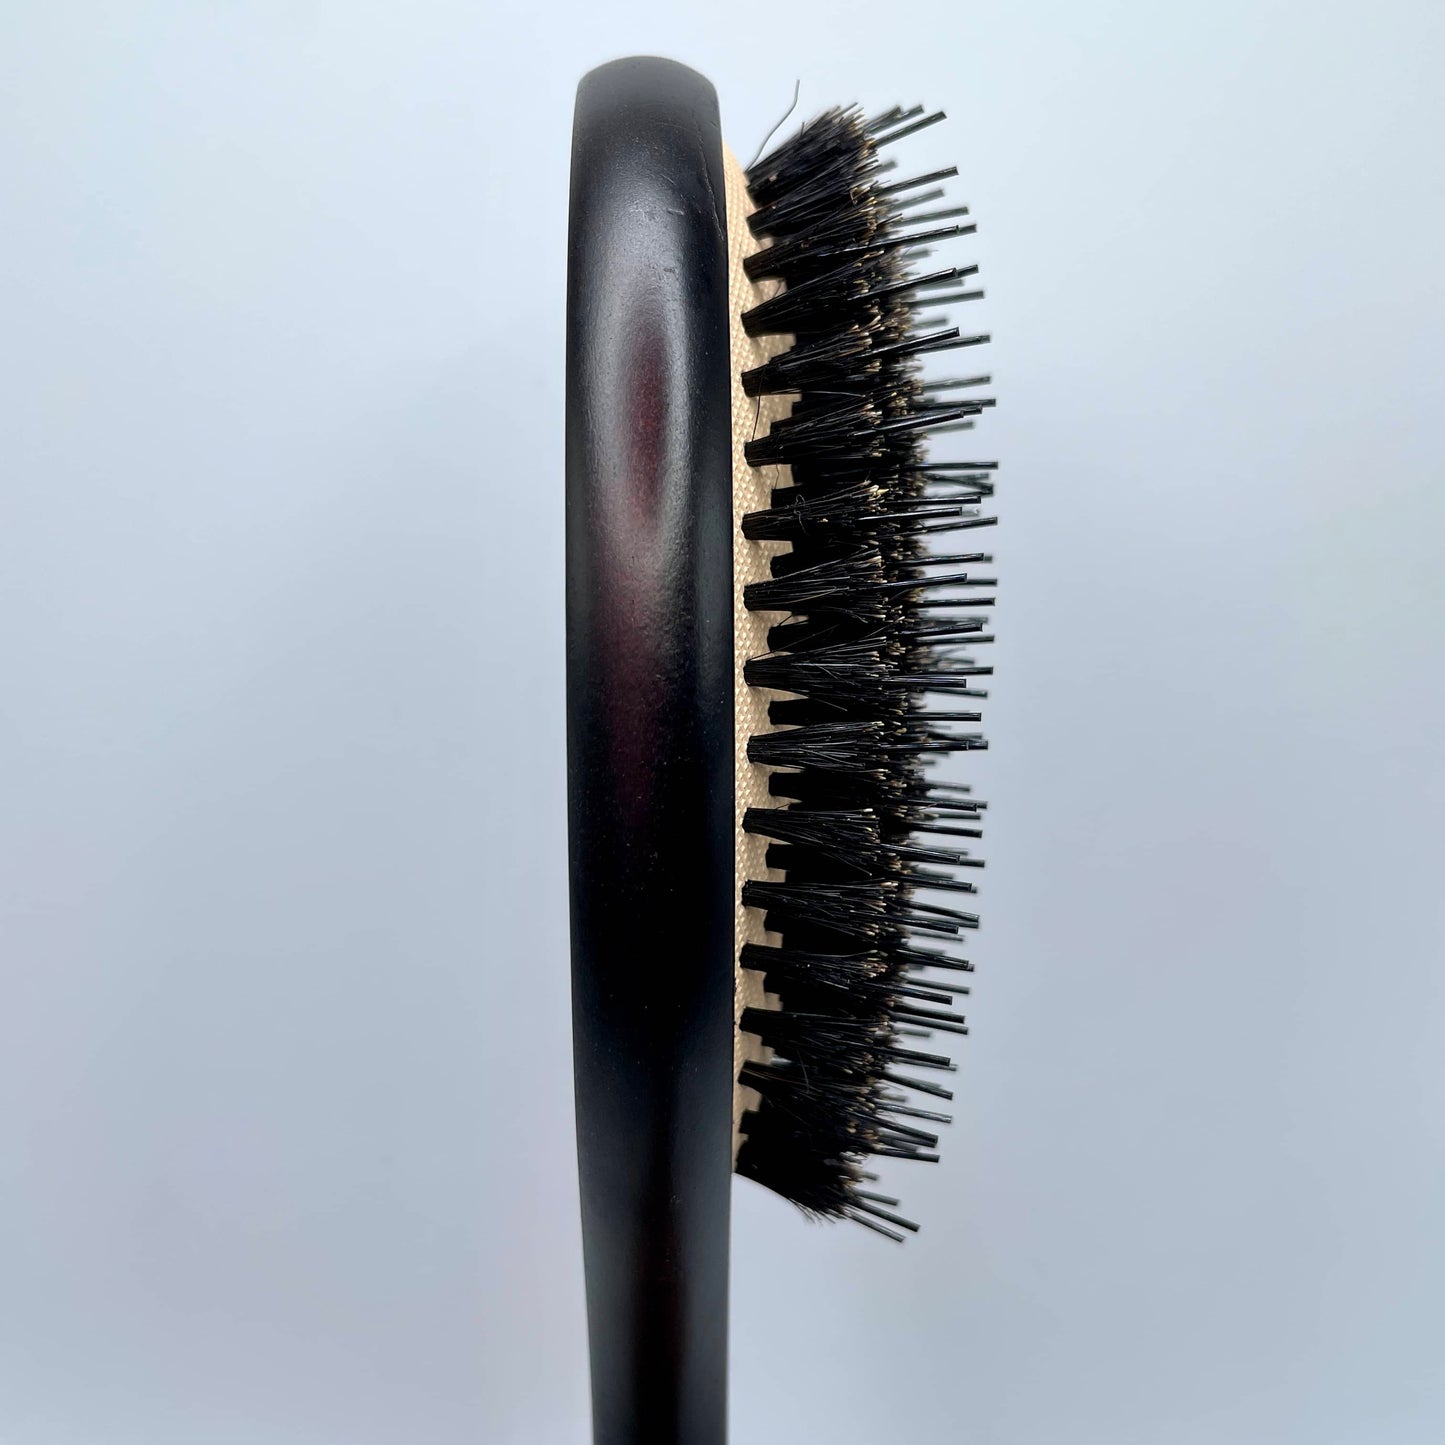 The No Shampoo Hairbrush